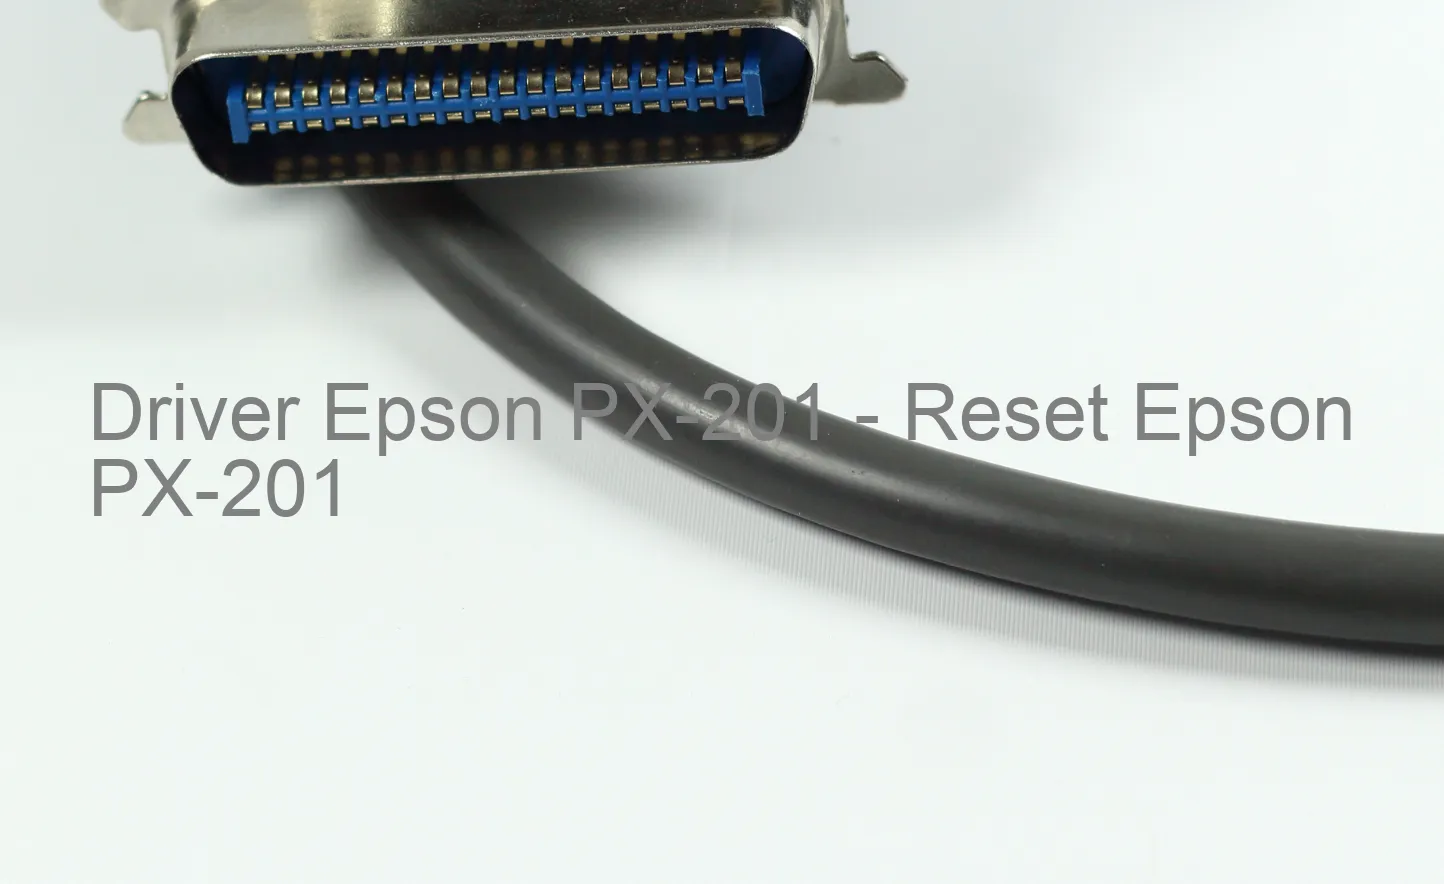 Epson PX-201のドライバー、Epson PX-201のリセットソフトウェア